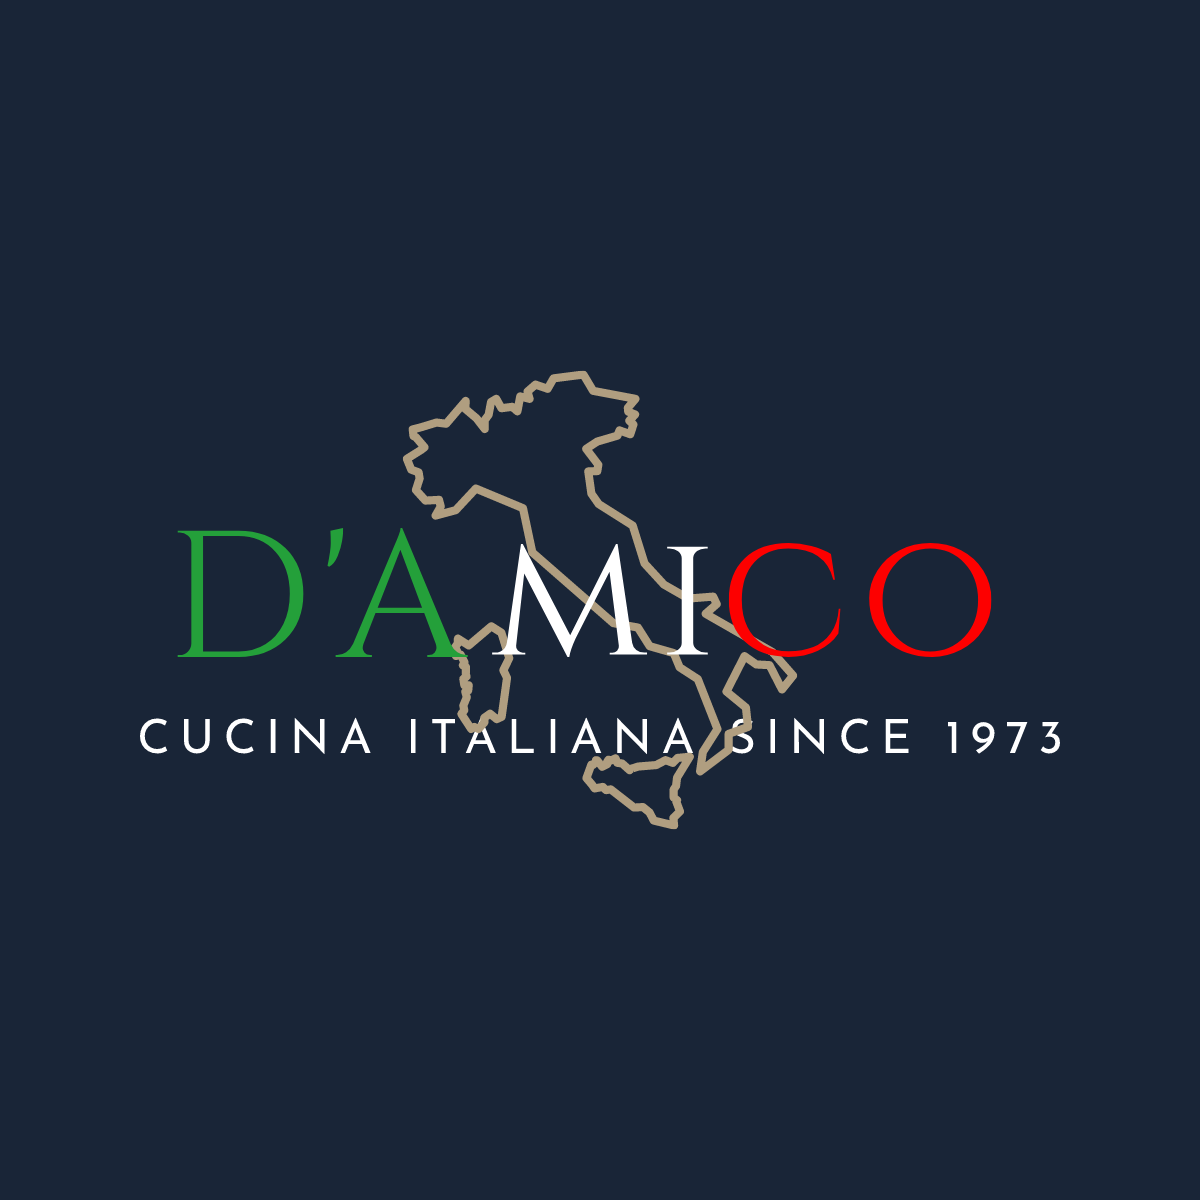 D'Amico Group Logo